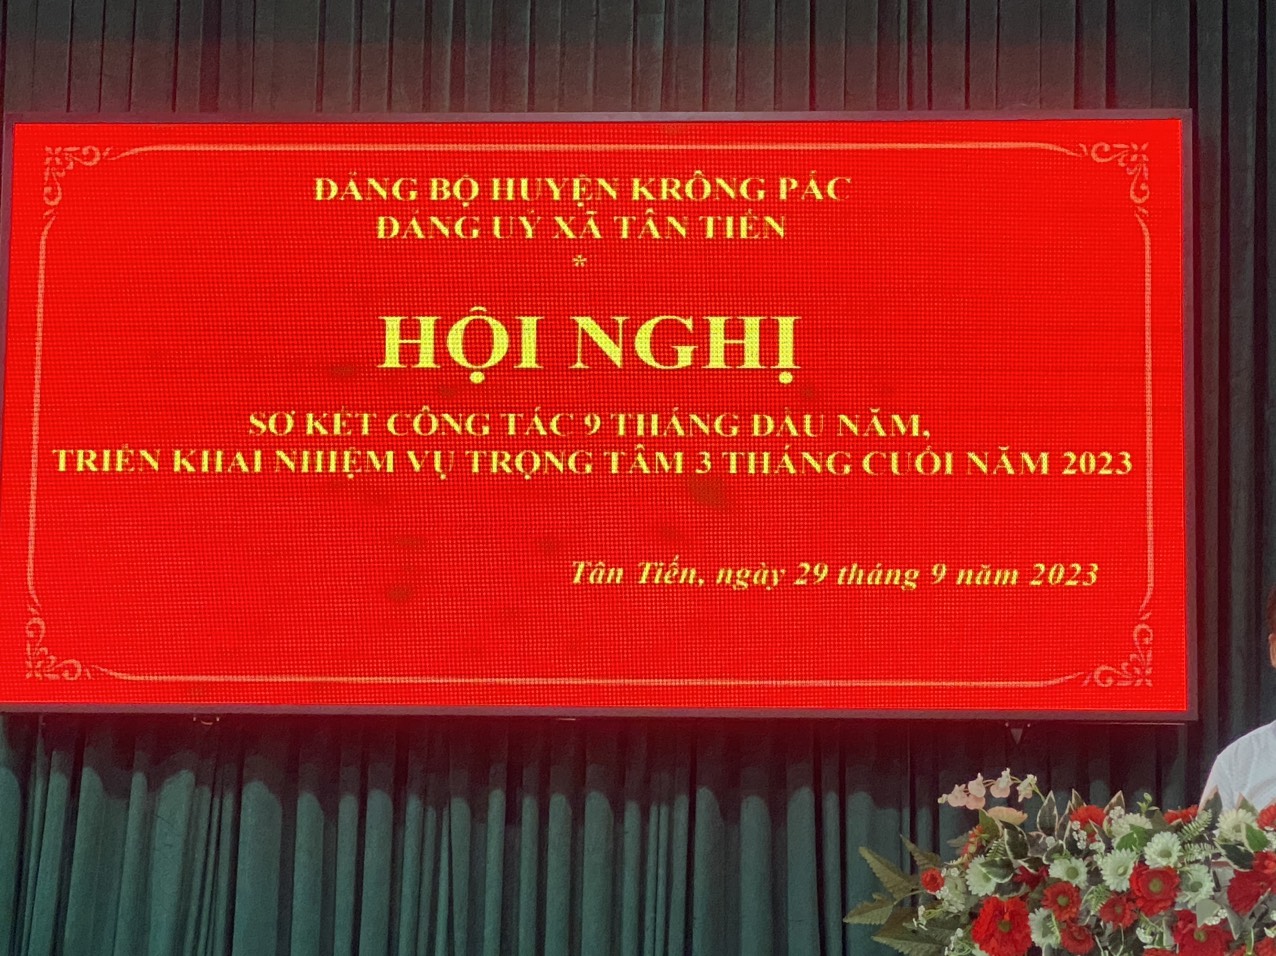 Đảng ủy xã Tân Tiến tổ chức Hội nghị sơ kết công tác 9 tháng đầu năm, triển khai nhiệm vụ trọng tâm 3 tháng cuối năm 2023